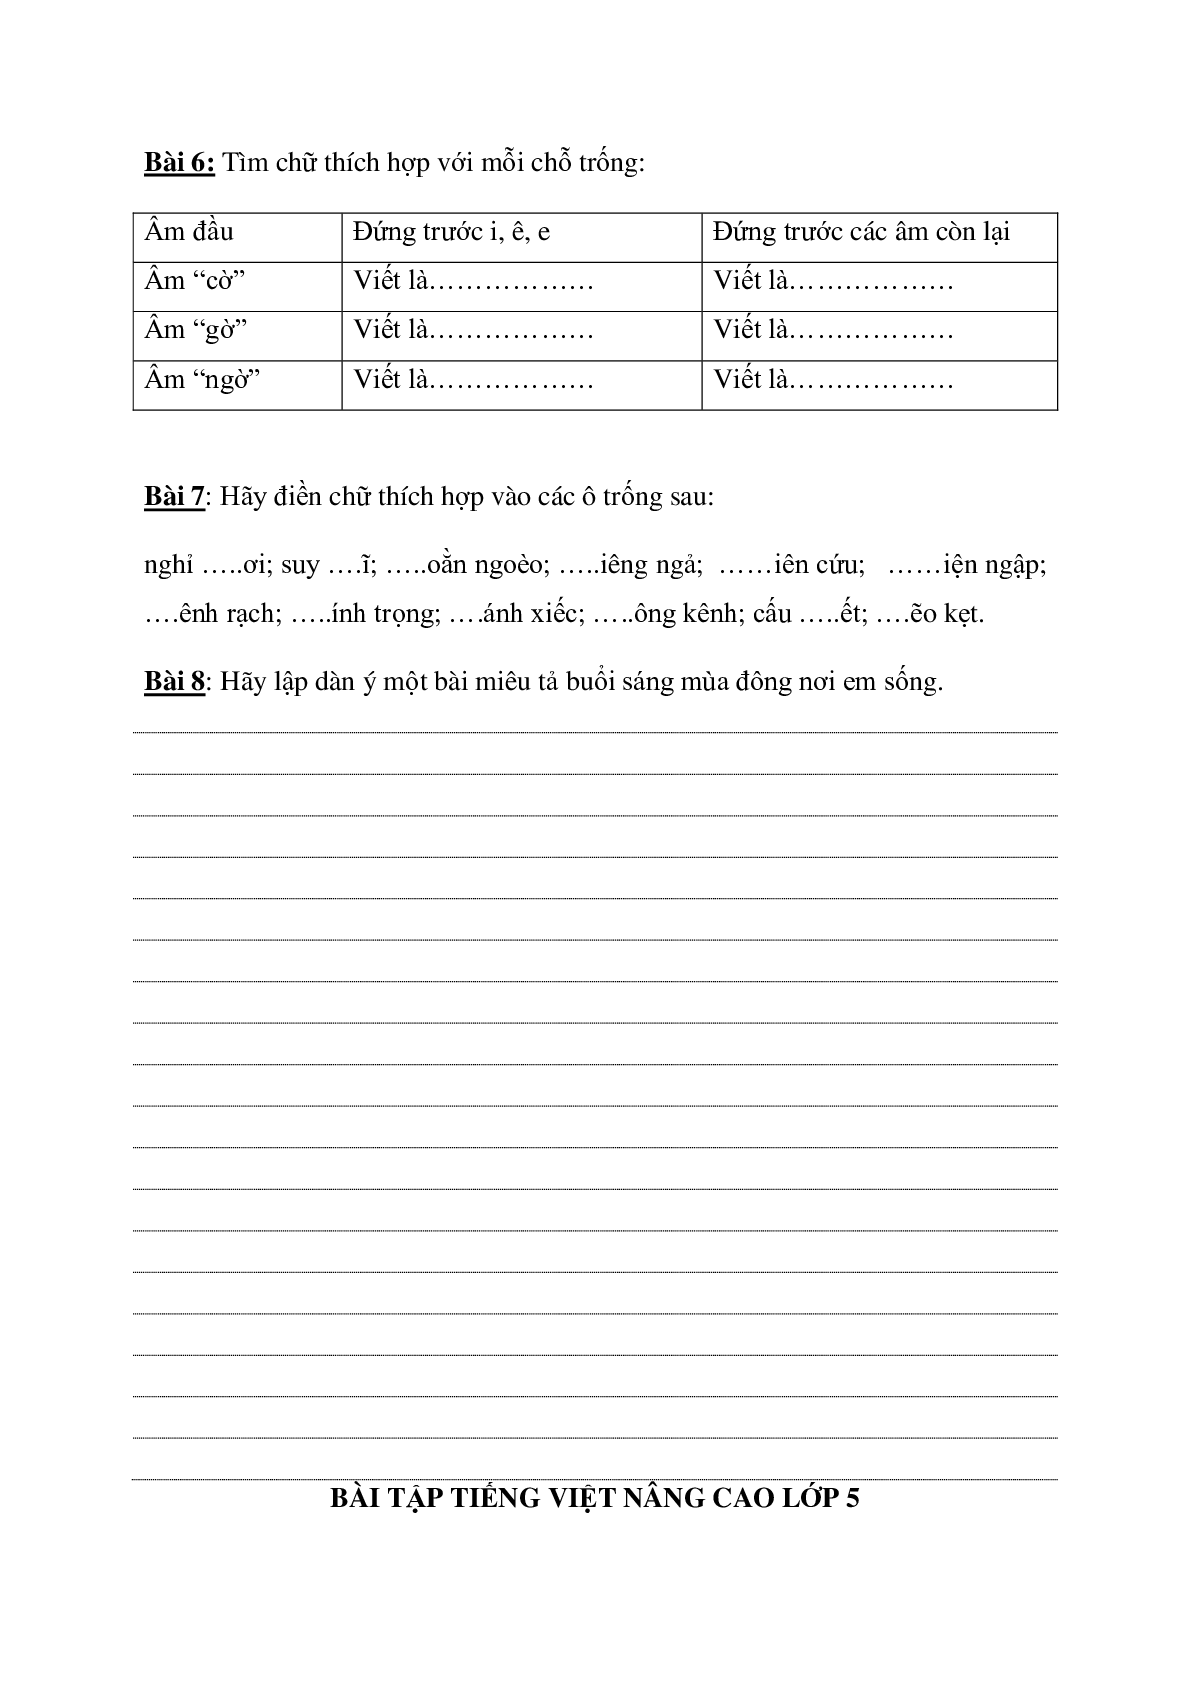 Bài tập nâng cao môn Tiếng Việt lớp 5 (trang 3)